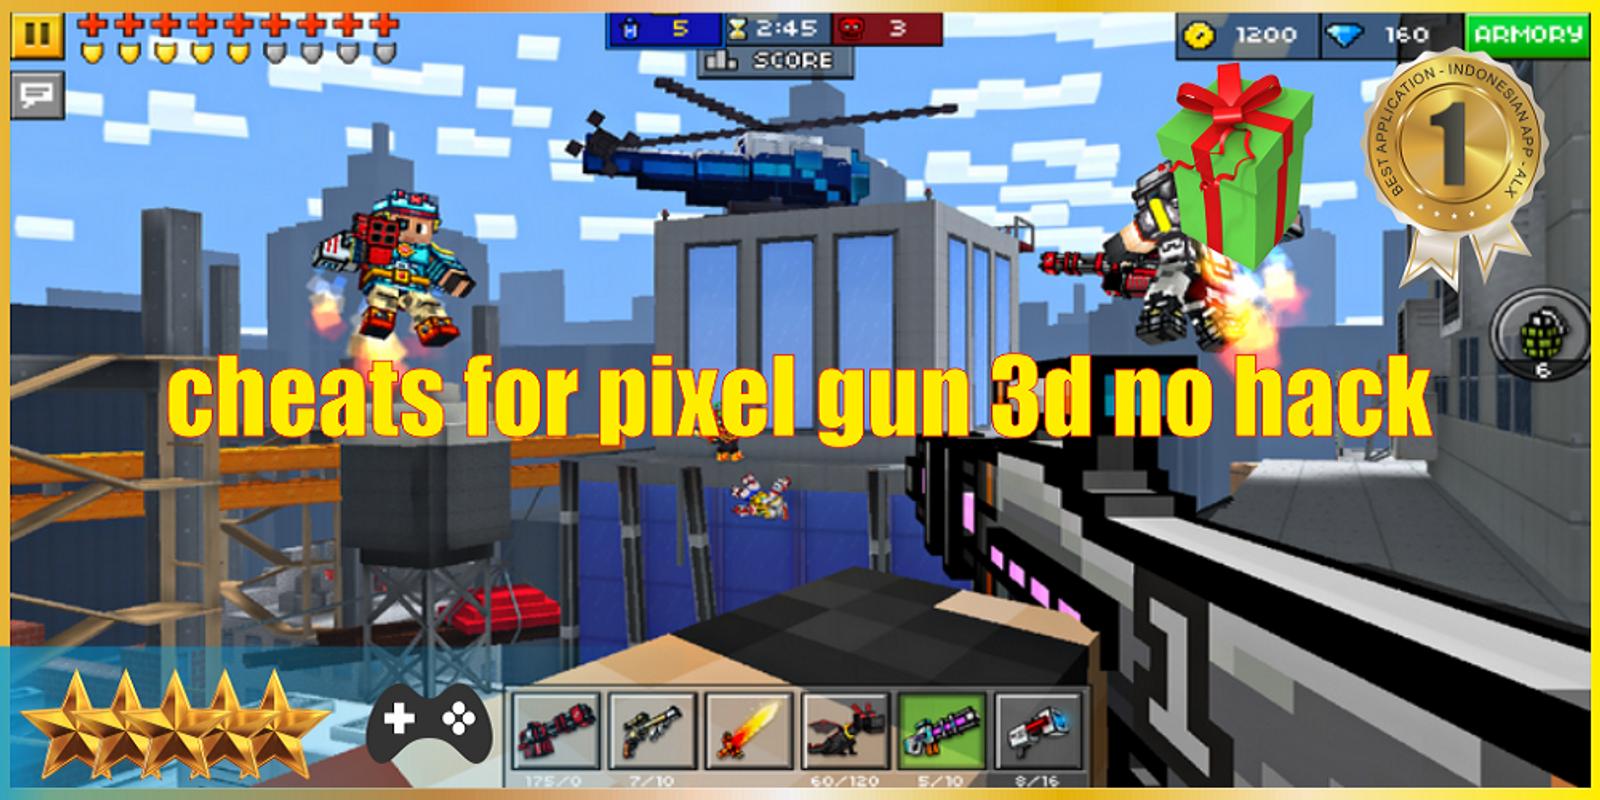 Pixel gun 3d cheats. Pixel Gun 3d читы. Коды в Pixel Gun 3d. Pixel Gun 3d Hack.